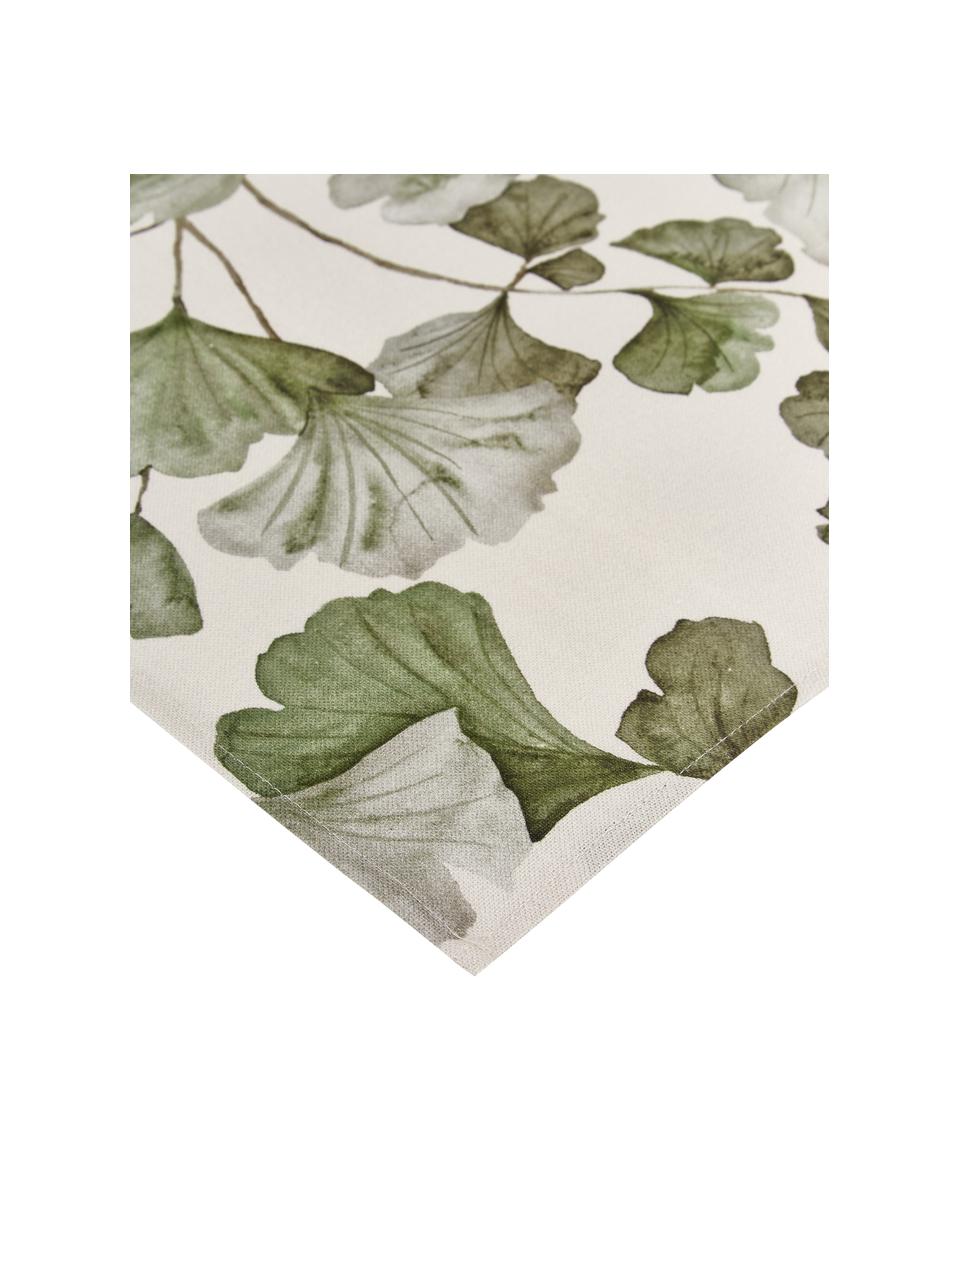 Bavlněné ubrousky s motivy listů ginkgo biloba Gigi, 4 ks, 100 % bavlna, Béžová, zelená, Š 45 cm, D 45 cm